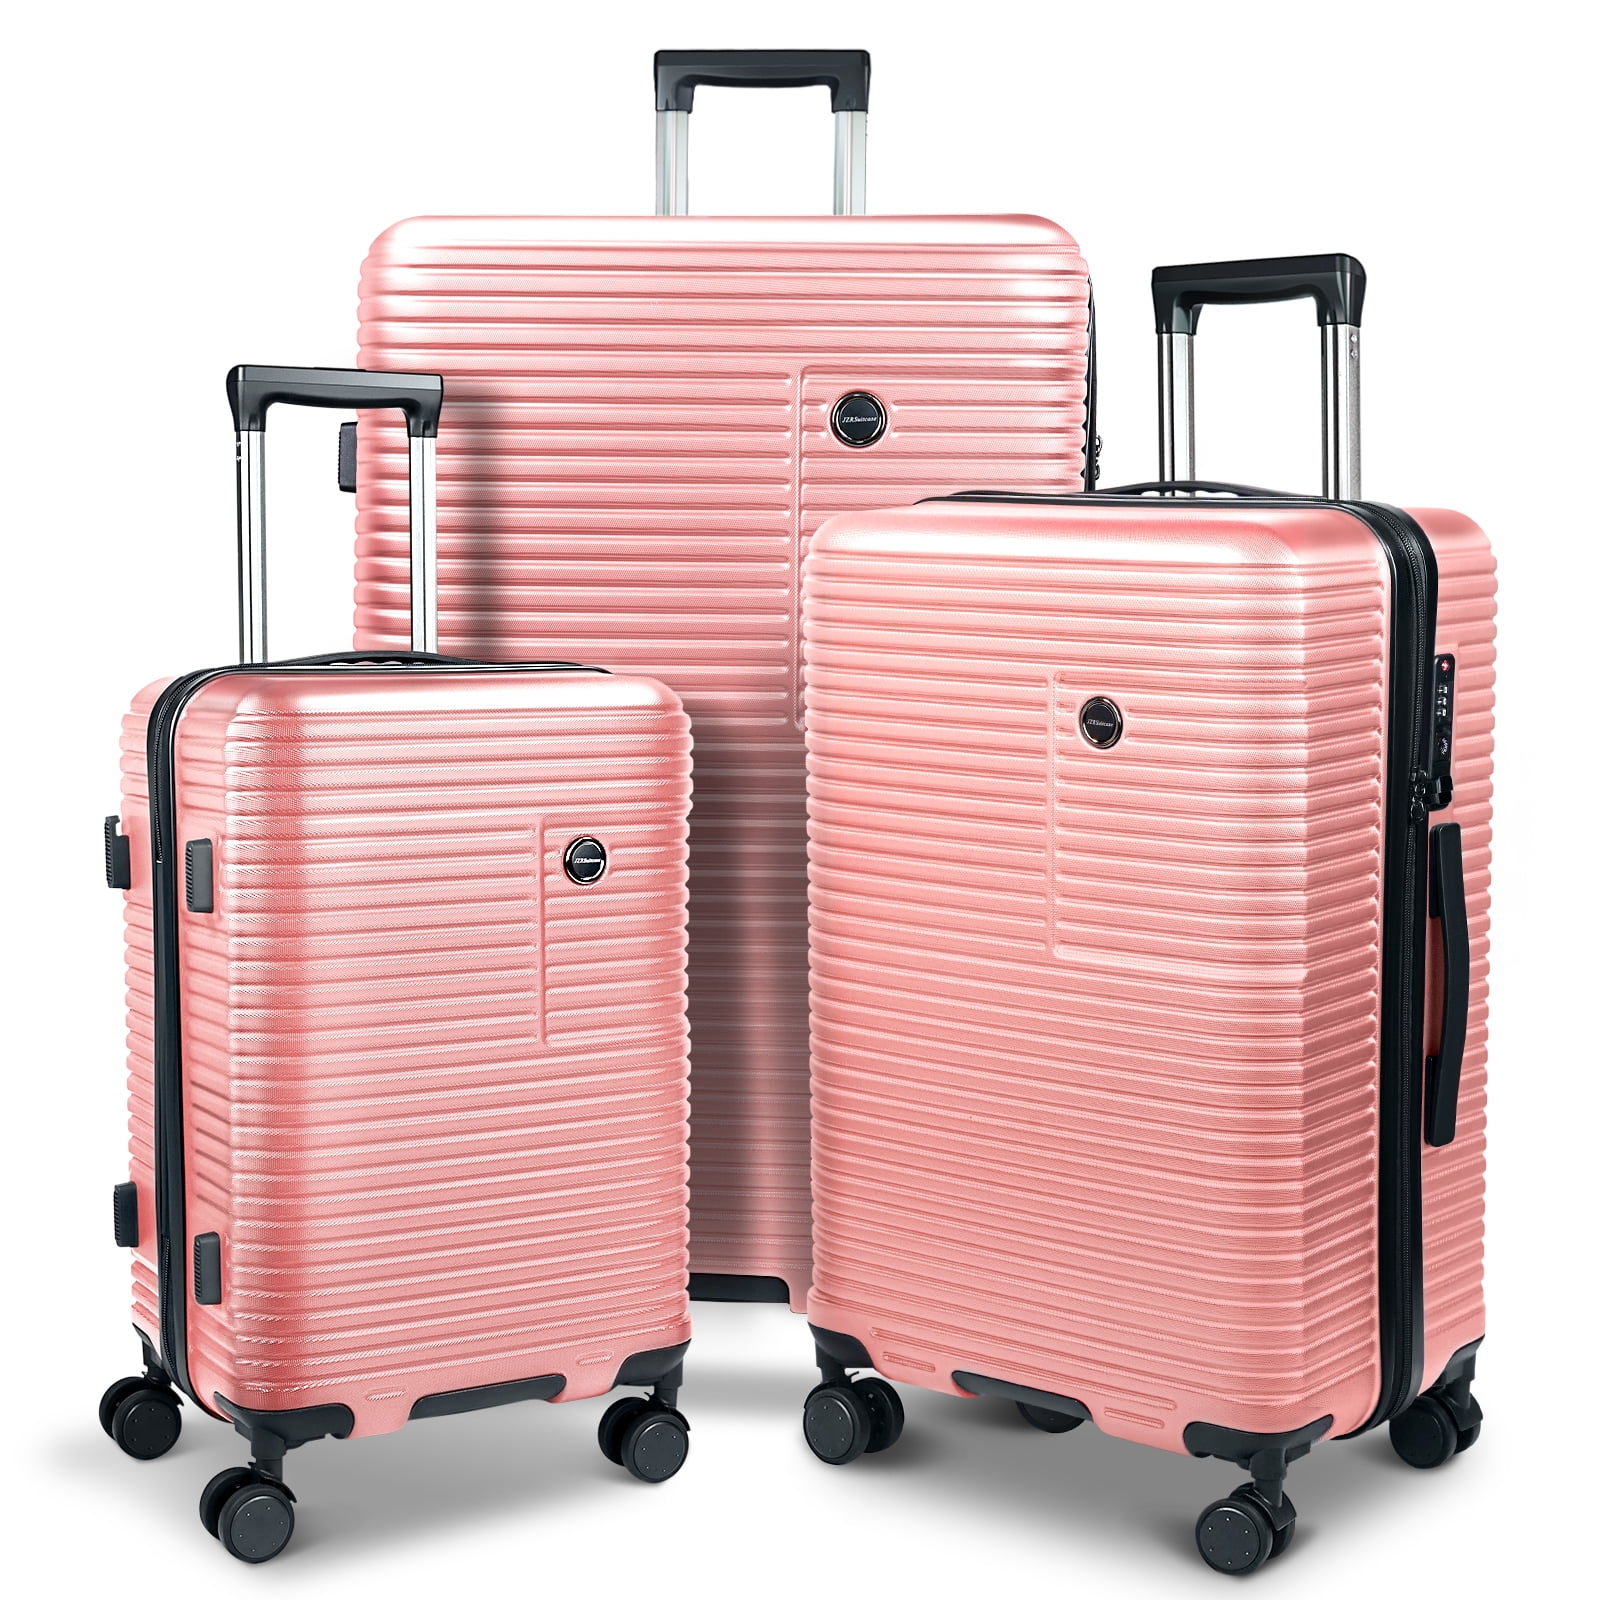 BLCK Polyester / Nylon Trolley Luggage Bags - Black | Luggage / Trolley Bags  BLCK Trolley Luggage Bags Small - Black Online – Elegant Auto Retail